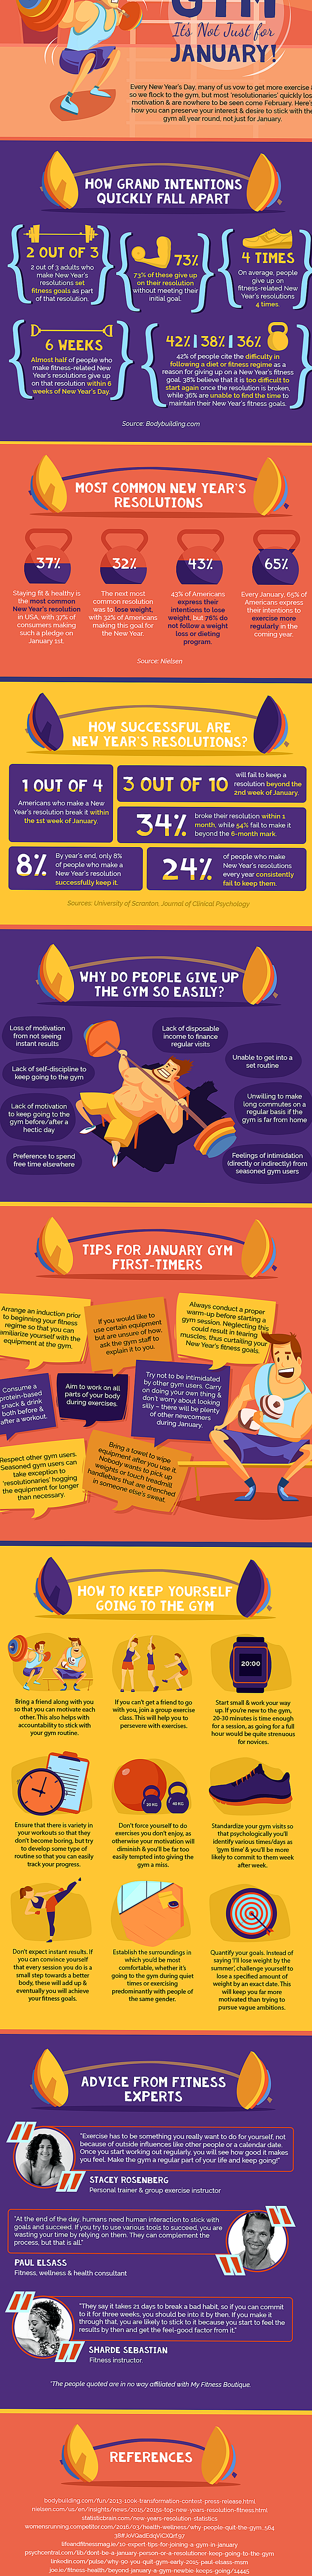 Infographie: conseils pour vous aider à réaliser vos résolutions de nouvel an liées à la condition physique